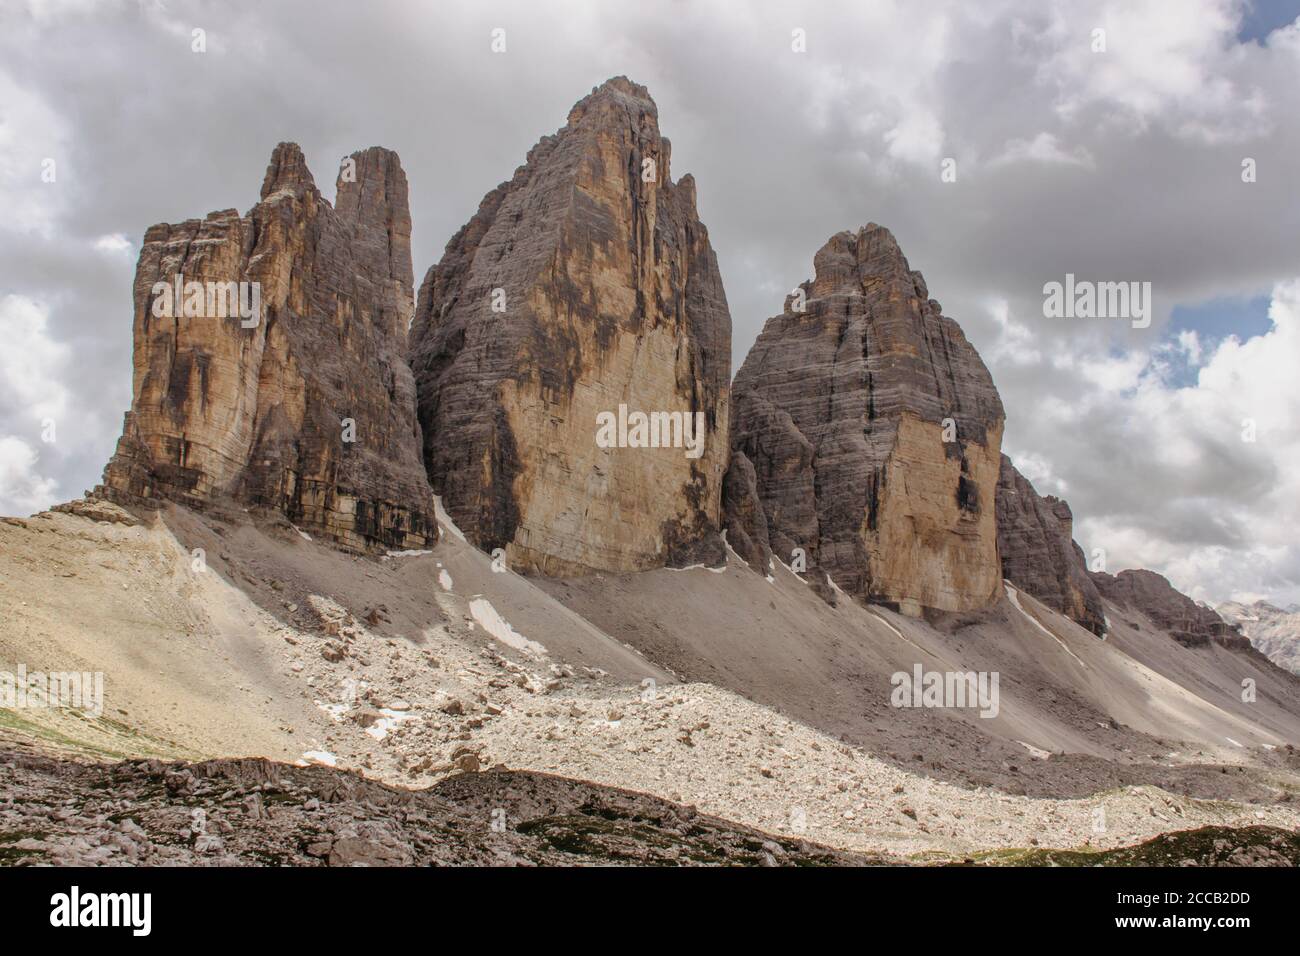 Escursioni intorno a tre cime delle tre Cime di Lavaredo (Drei Zinnen), Dolomiti, Italia. Uno dei gruppi di montagna più conosciuti delle Alpi. Attivo sano l Foto Stock